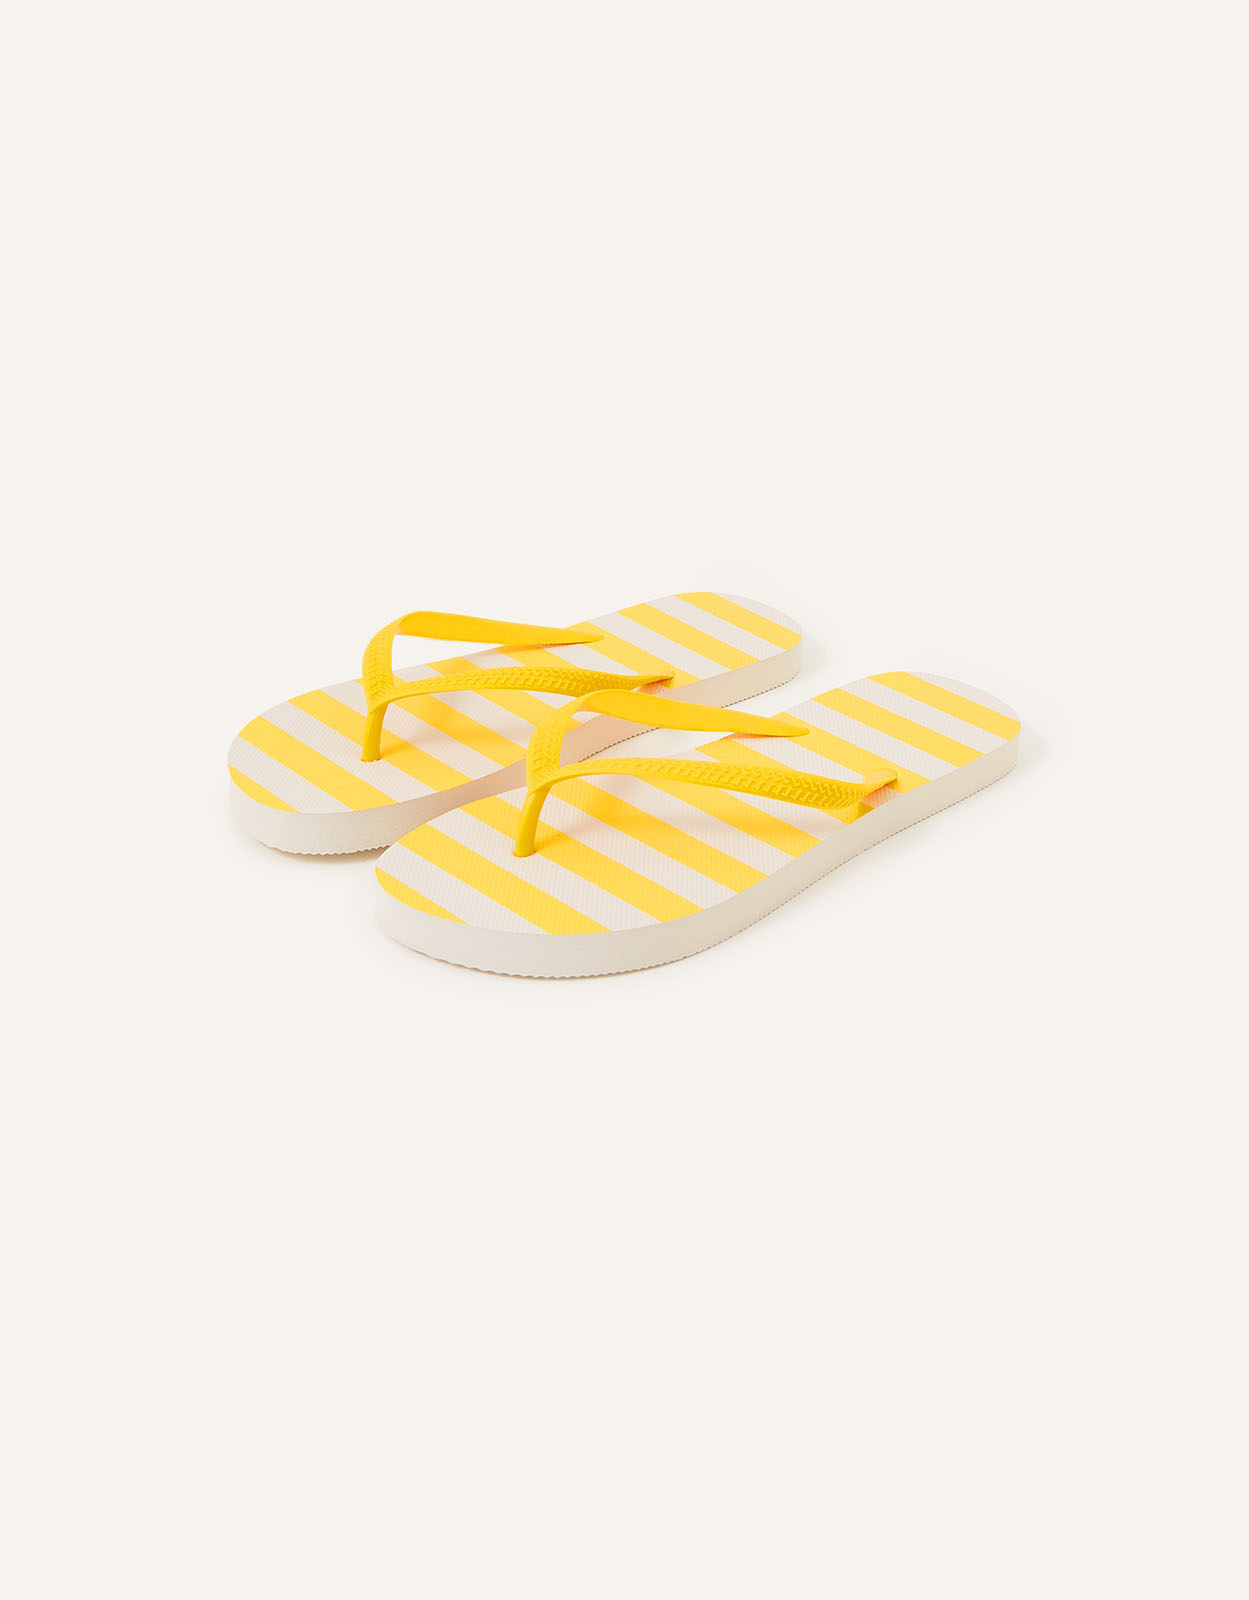 Accessorize Women's Stripe Flip Flops Yellow, Size: M